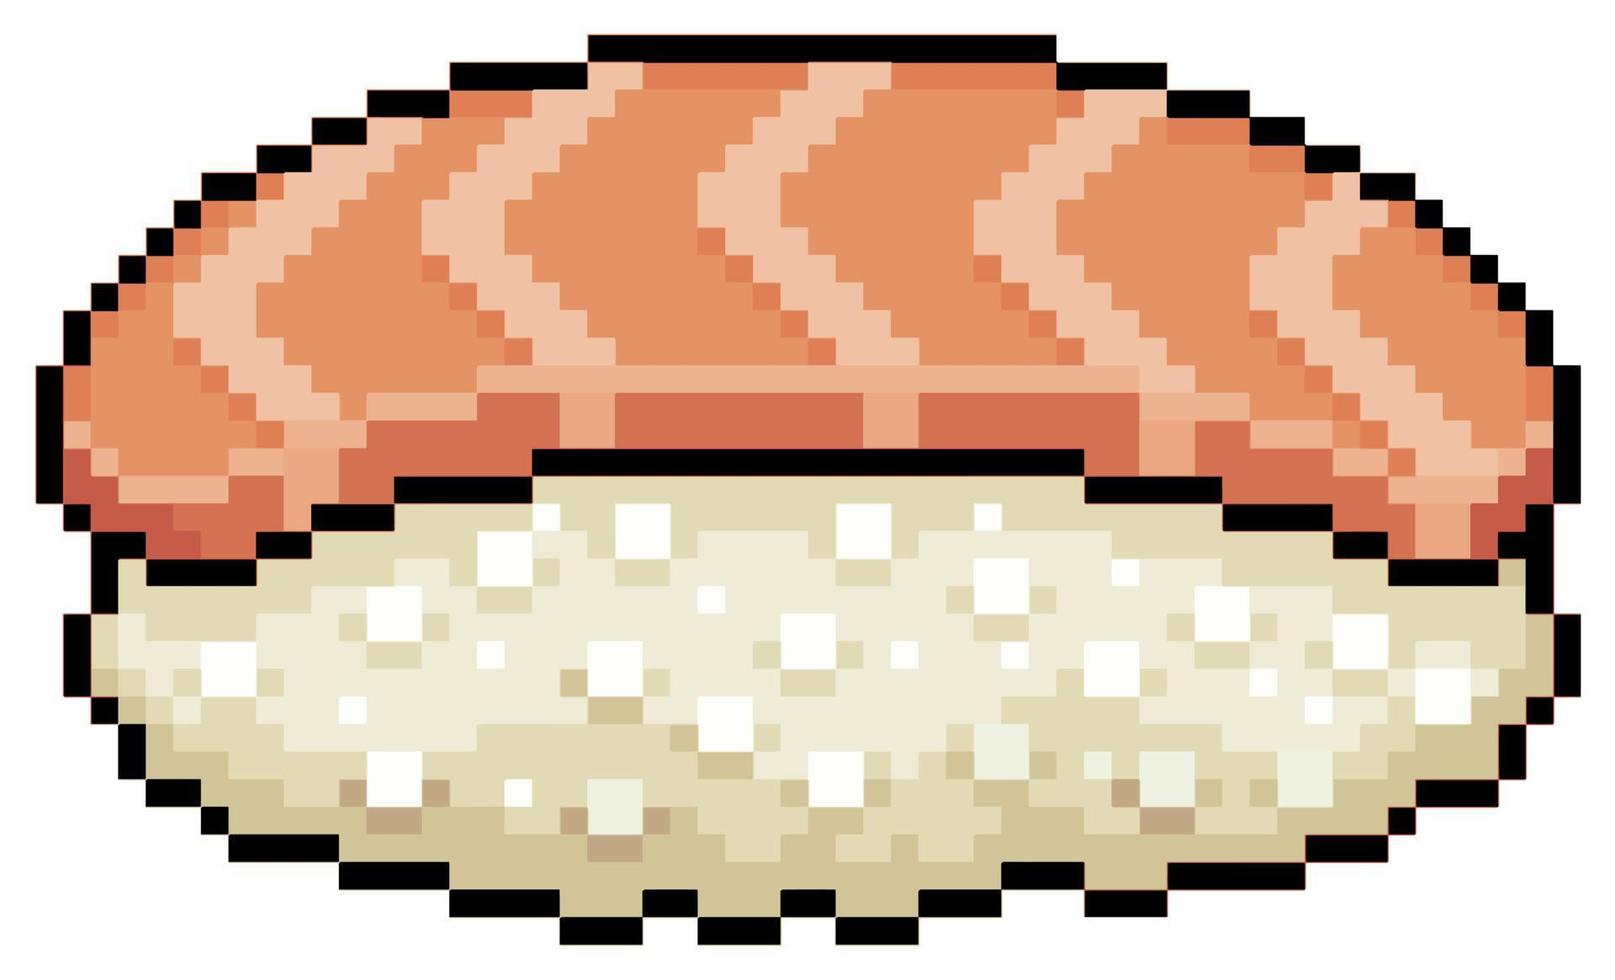 Pixel art sake nigiri sushi japanese food vector icon for 8bit game on white background